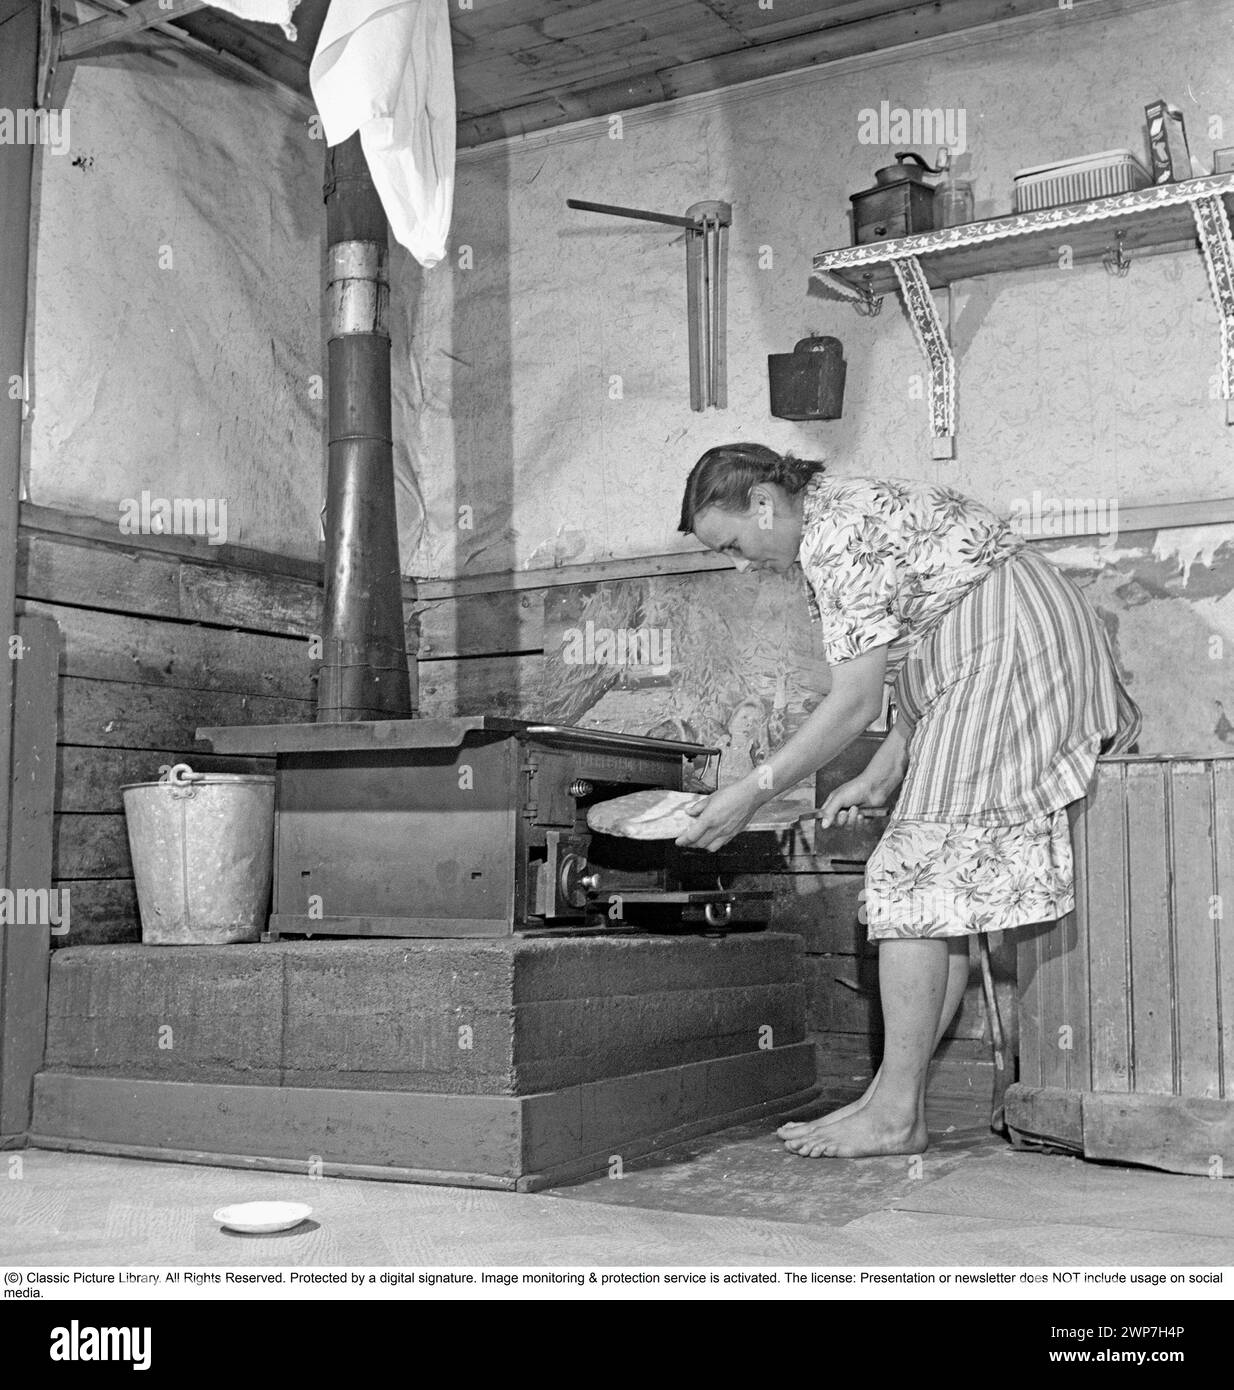 Cuisson du pain 1949. Intérieur d'une cuisine avec une femme qui cuit du pain. Une cuisine rurale en Laponie Suède 1949 avec un poêle de cuisine en fonte chauffé au bois de chauffage. Notez les pieds de la femme, elle n'a pas de chaussettes. Kristoffersson ref AS84-1 Banque D'Images